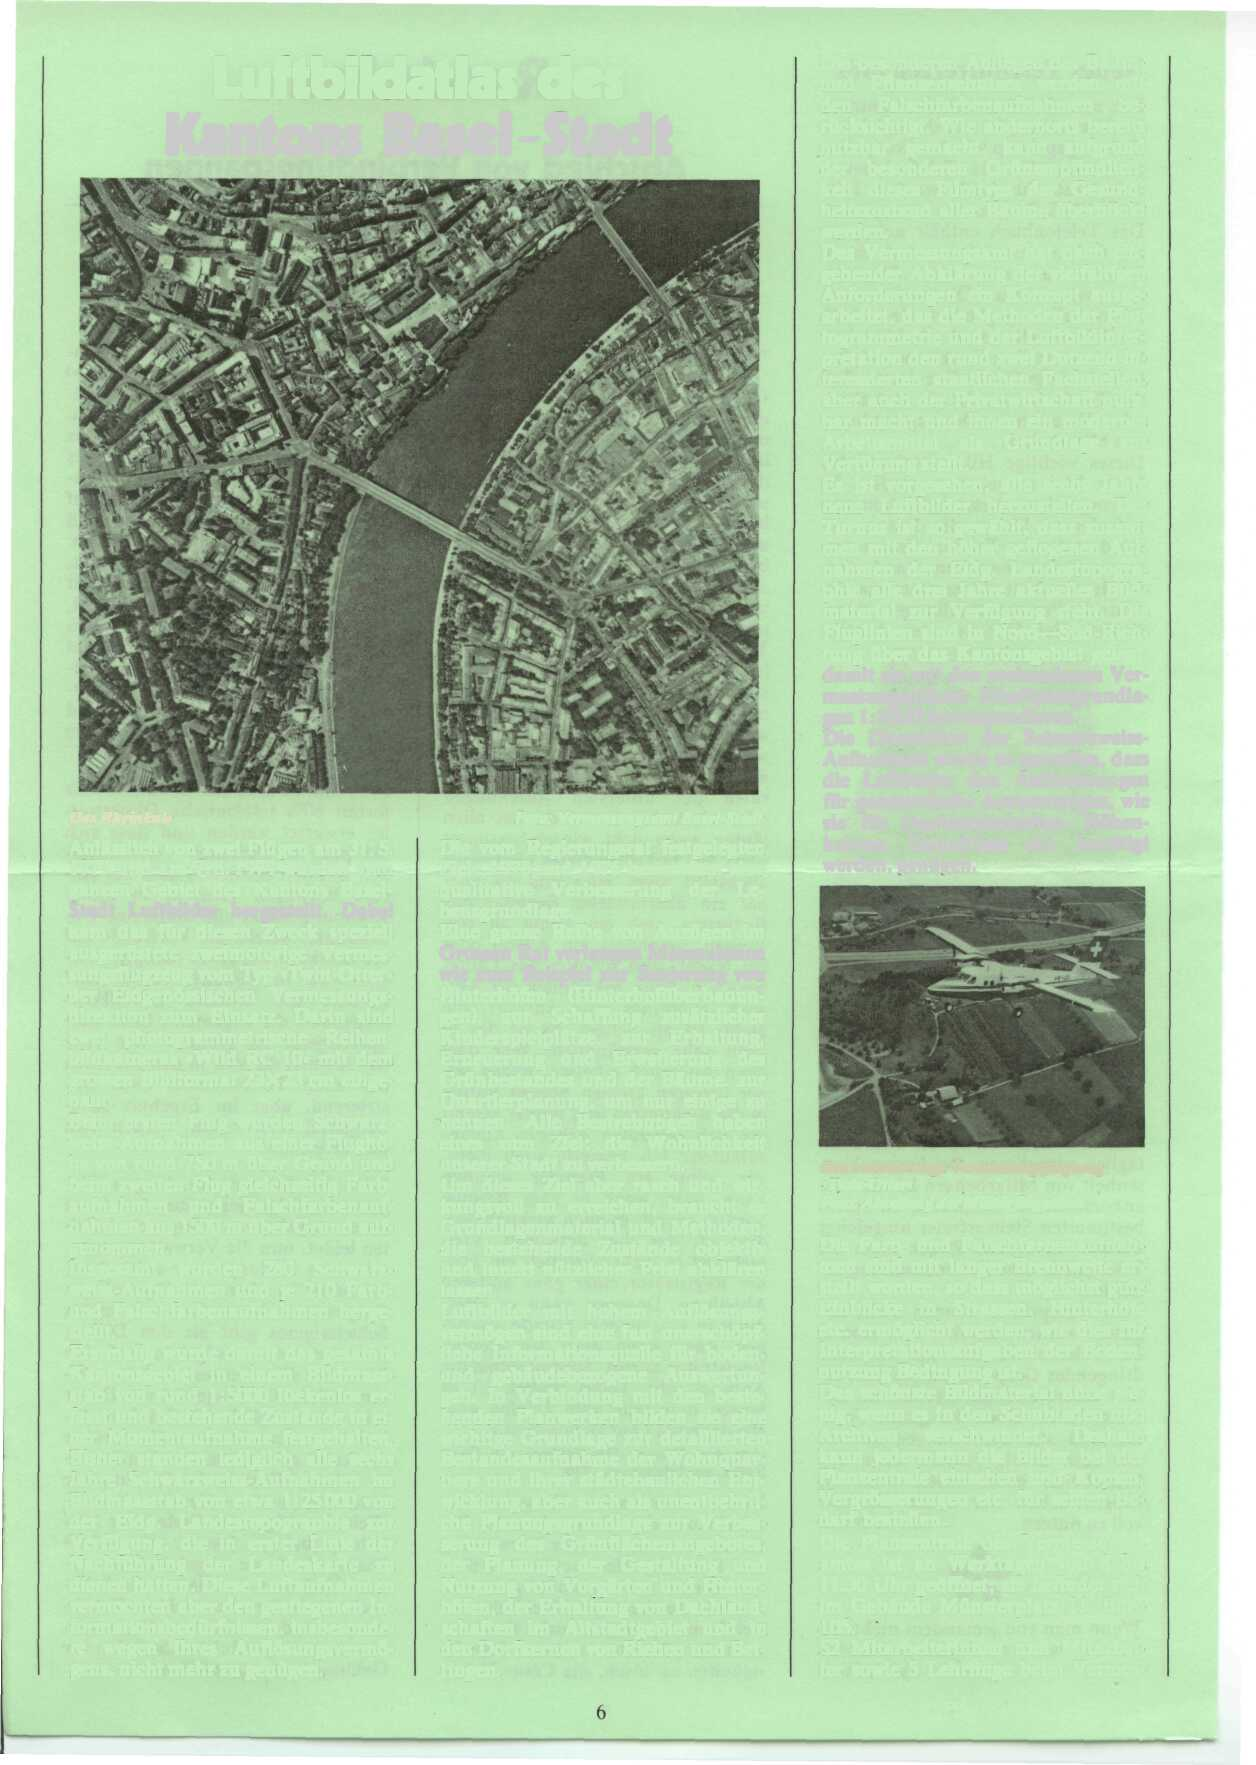 Das Rheinknie Luftbildatlas des Kantons Basel-Stadt Anlässlich von zwei Flügen am 31.5. 1979 und am 7.8.1979 wurden vom ganzen Gebiet des Kantons Basel- Stadt Luftbilder hergestellt.